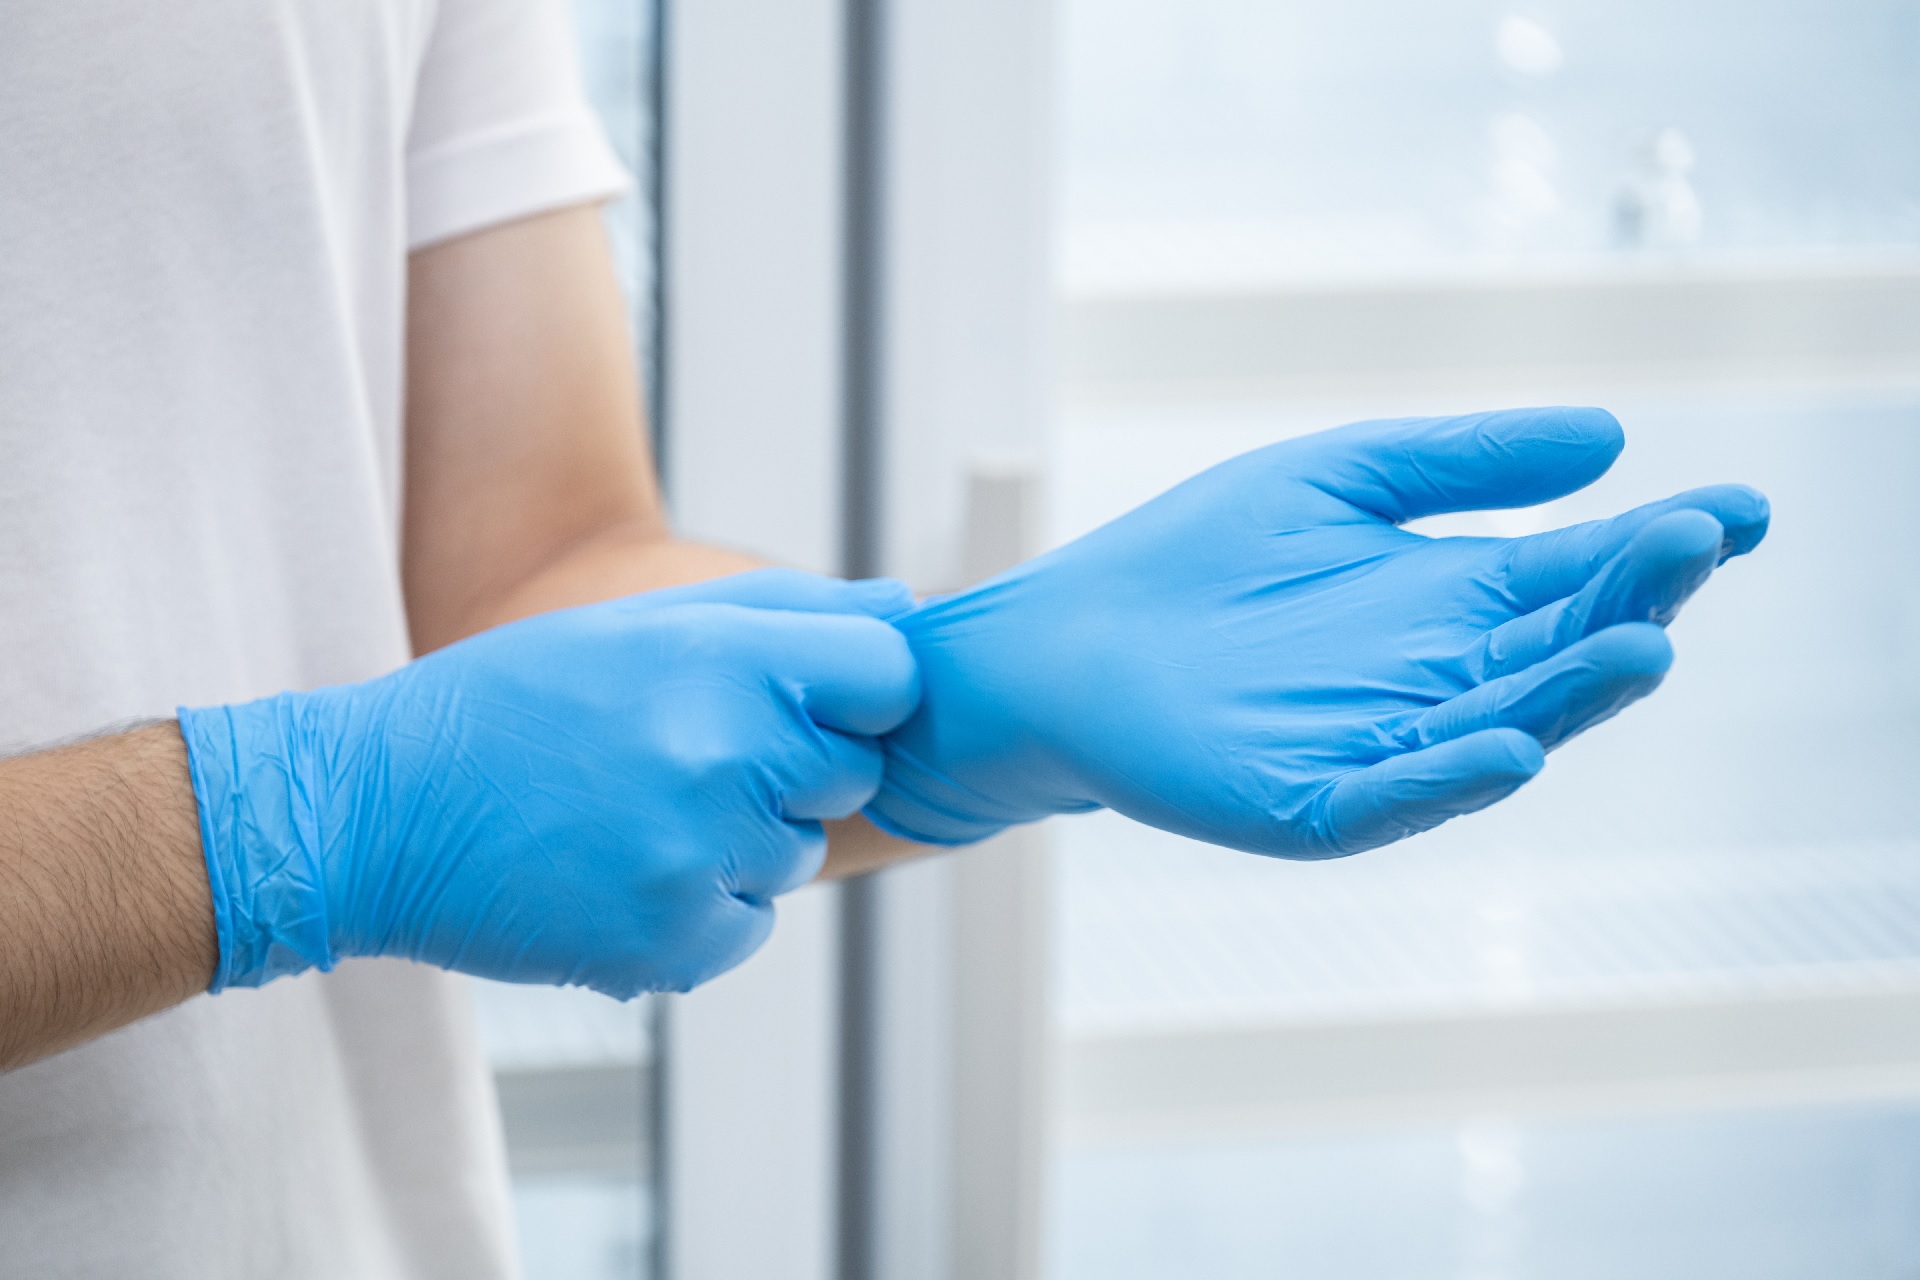 Droop I hele verden junk Genbrugelige handsker skal sænke hospitalernes klimaaftryk - Teknologisk  Institut